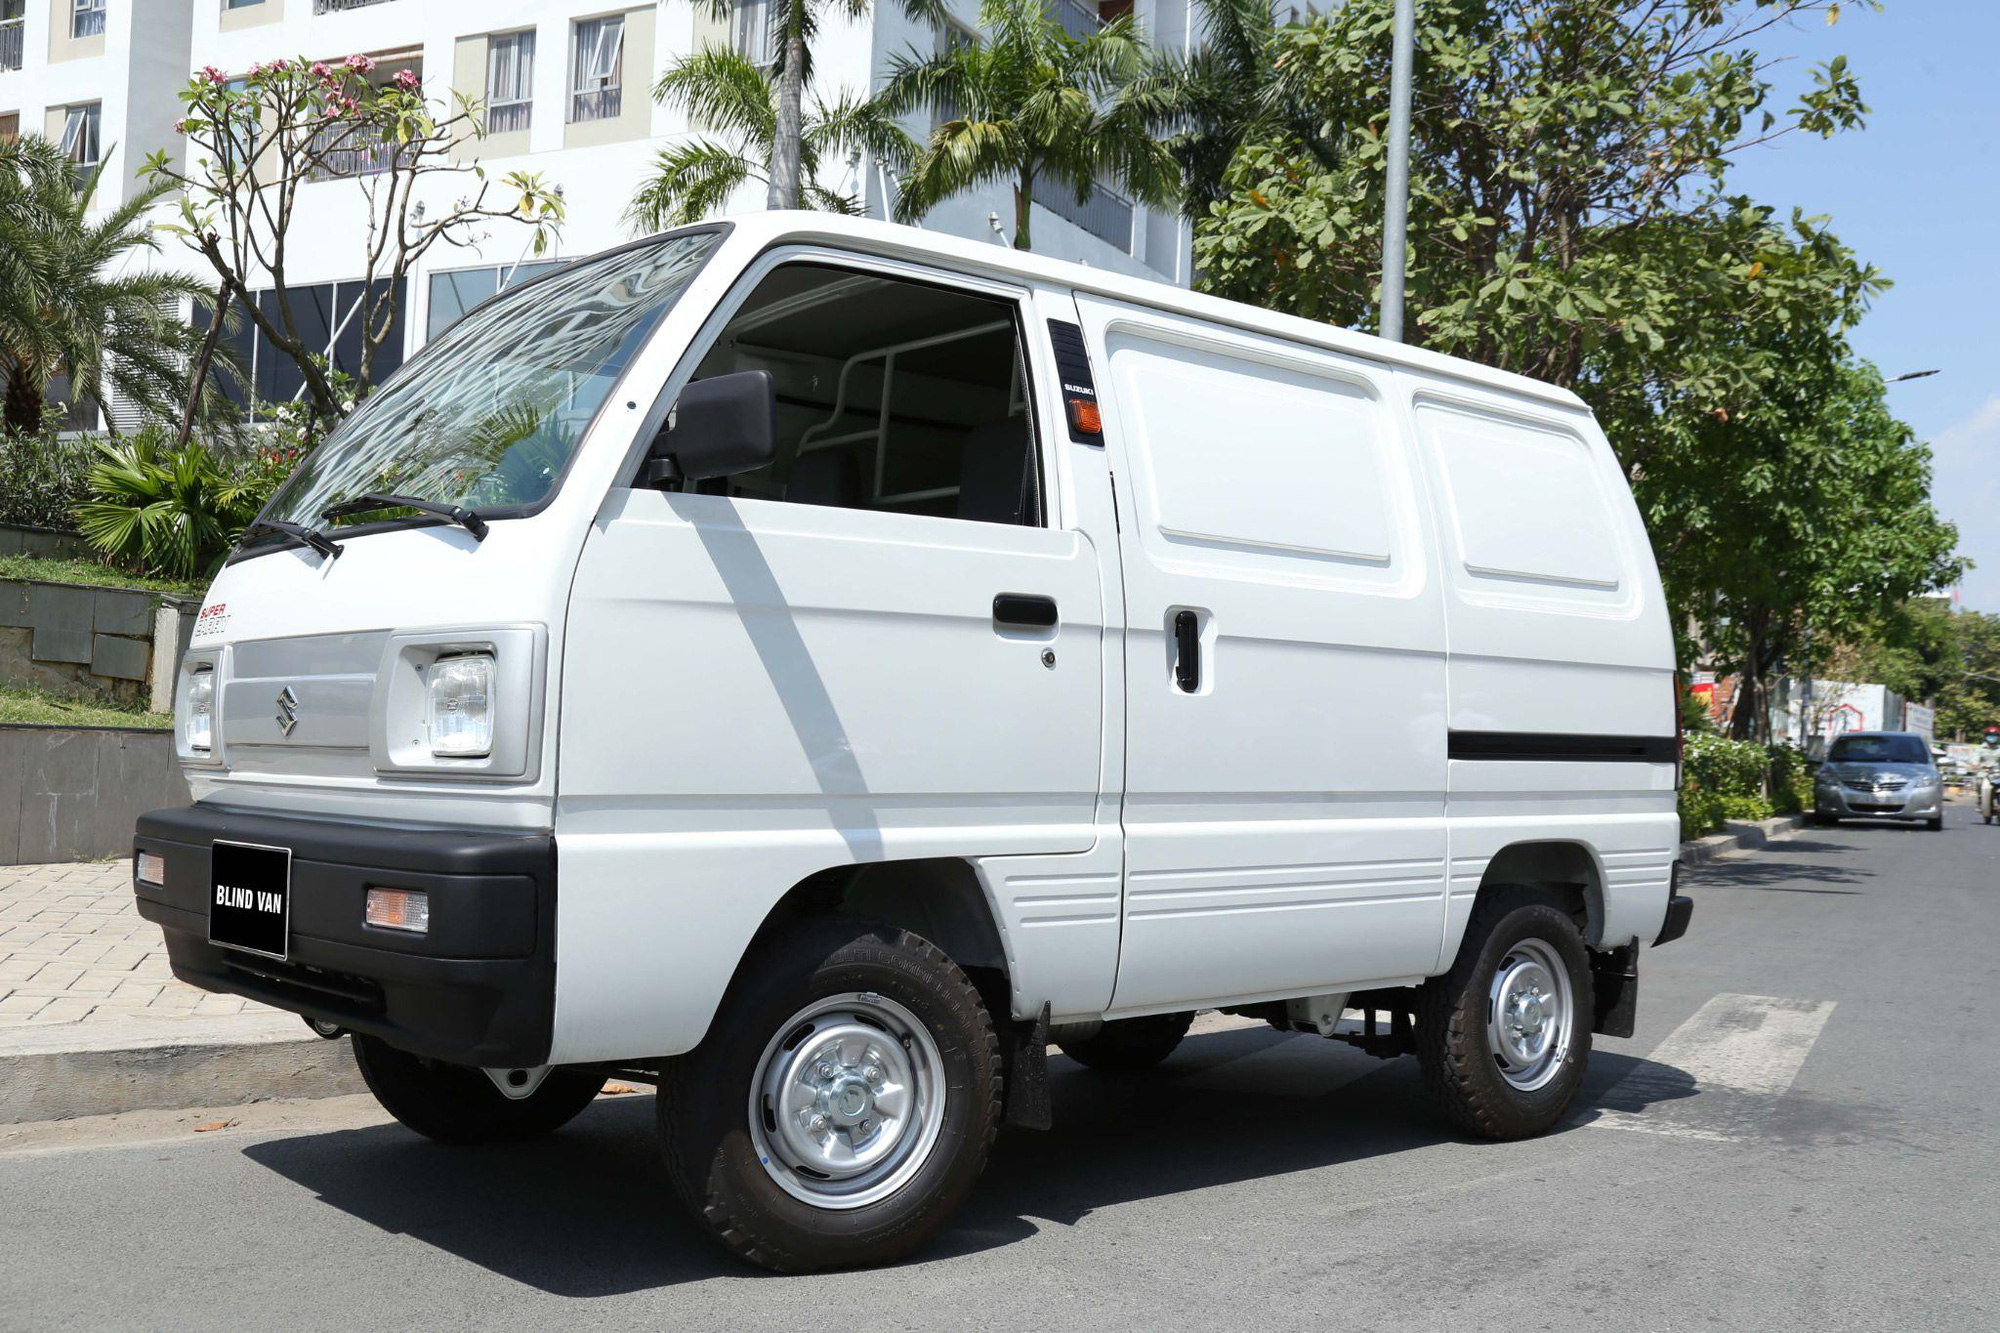 Suzuki tập trung sản xuất nội địa Việt Nam với các mẫu xe tải chất lượng - Ảnh 2.